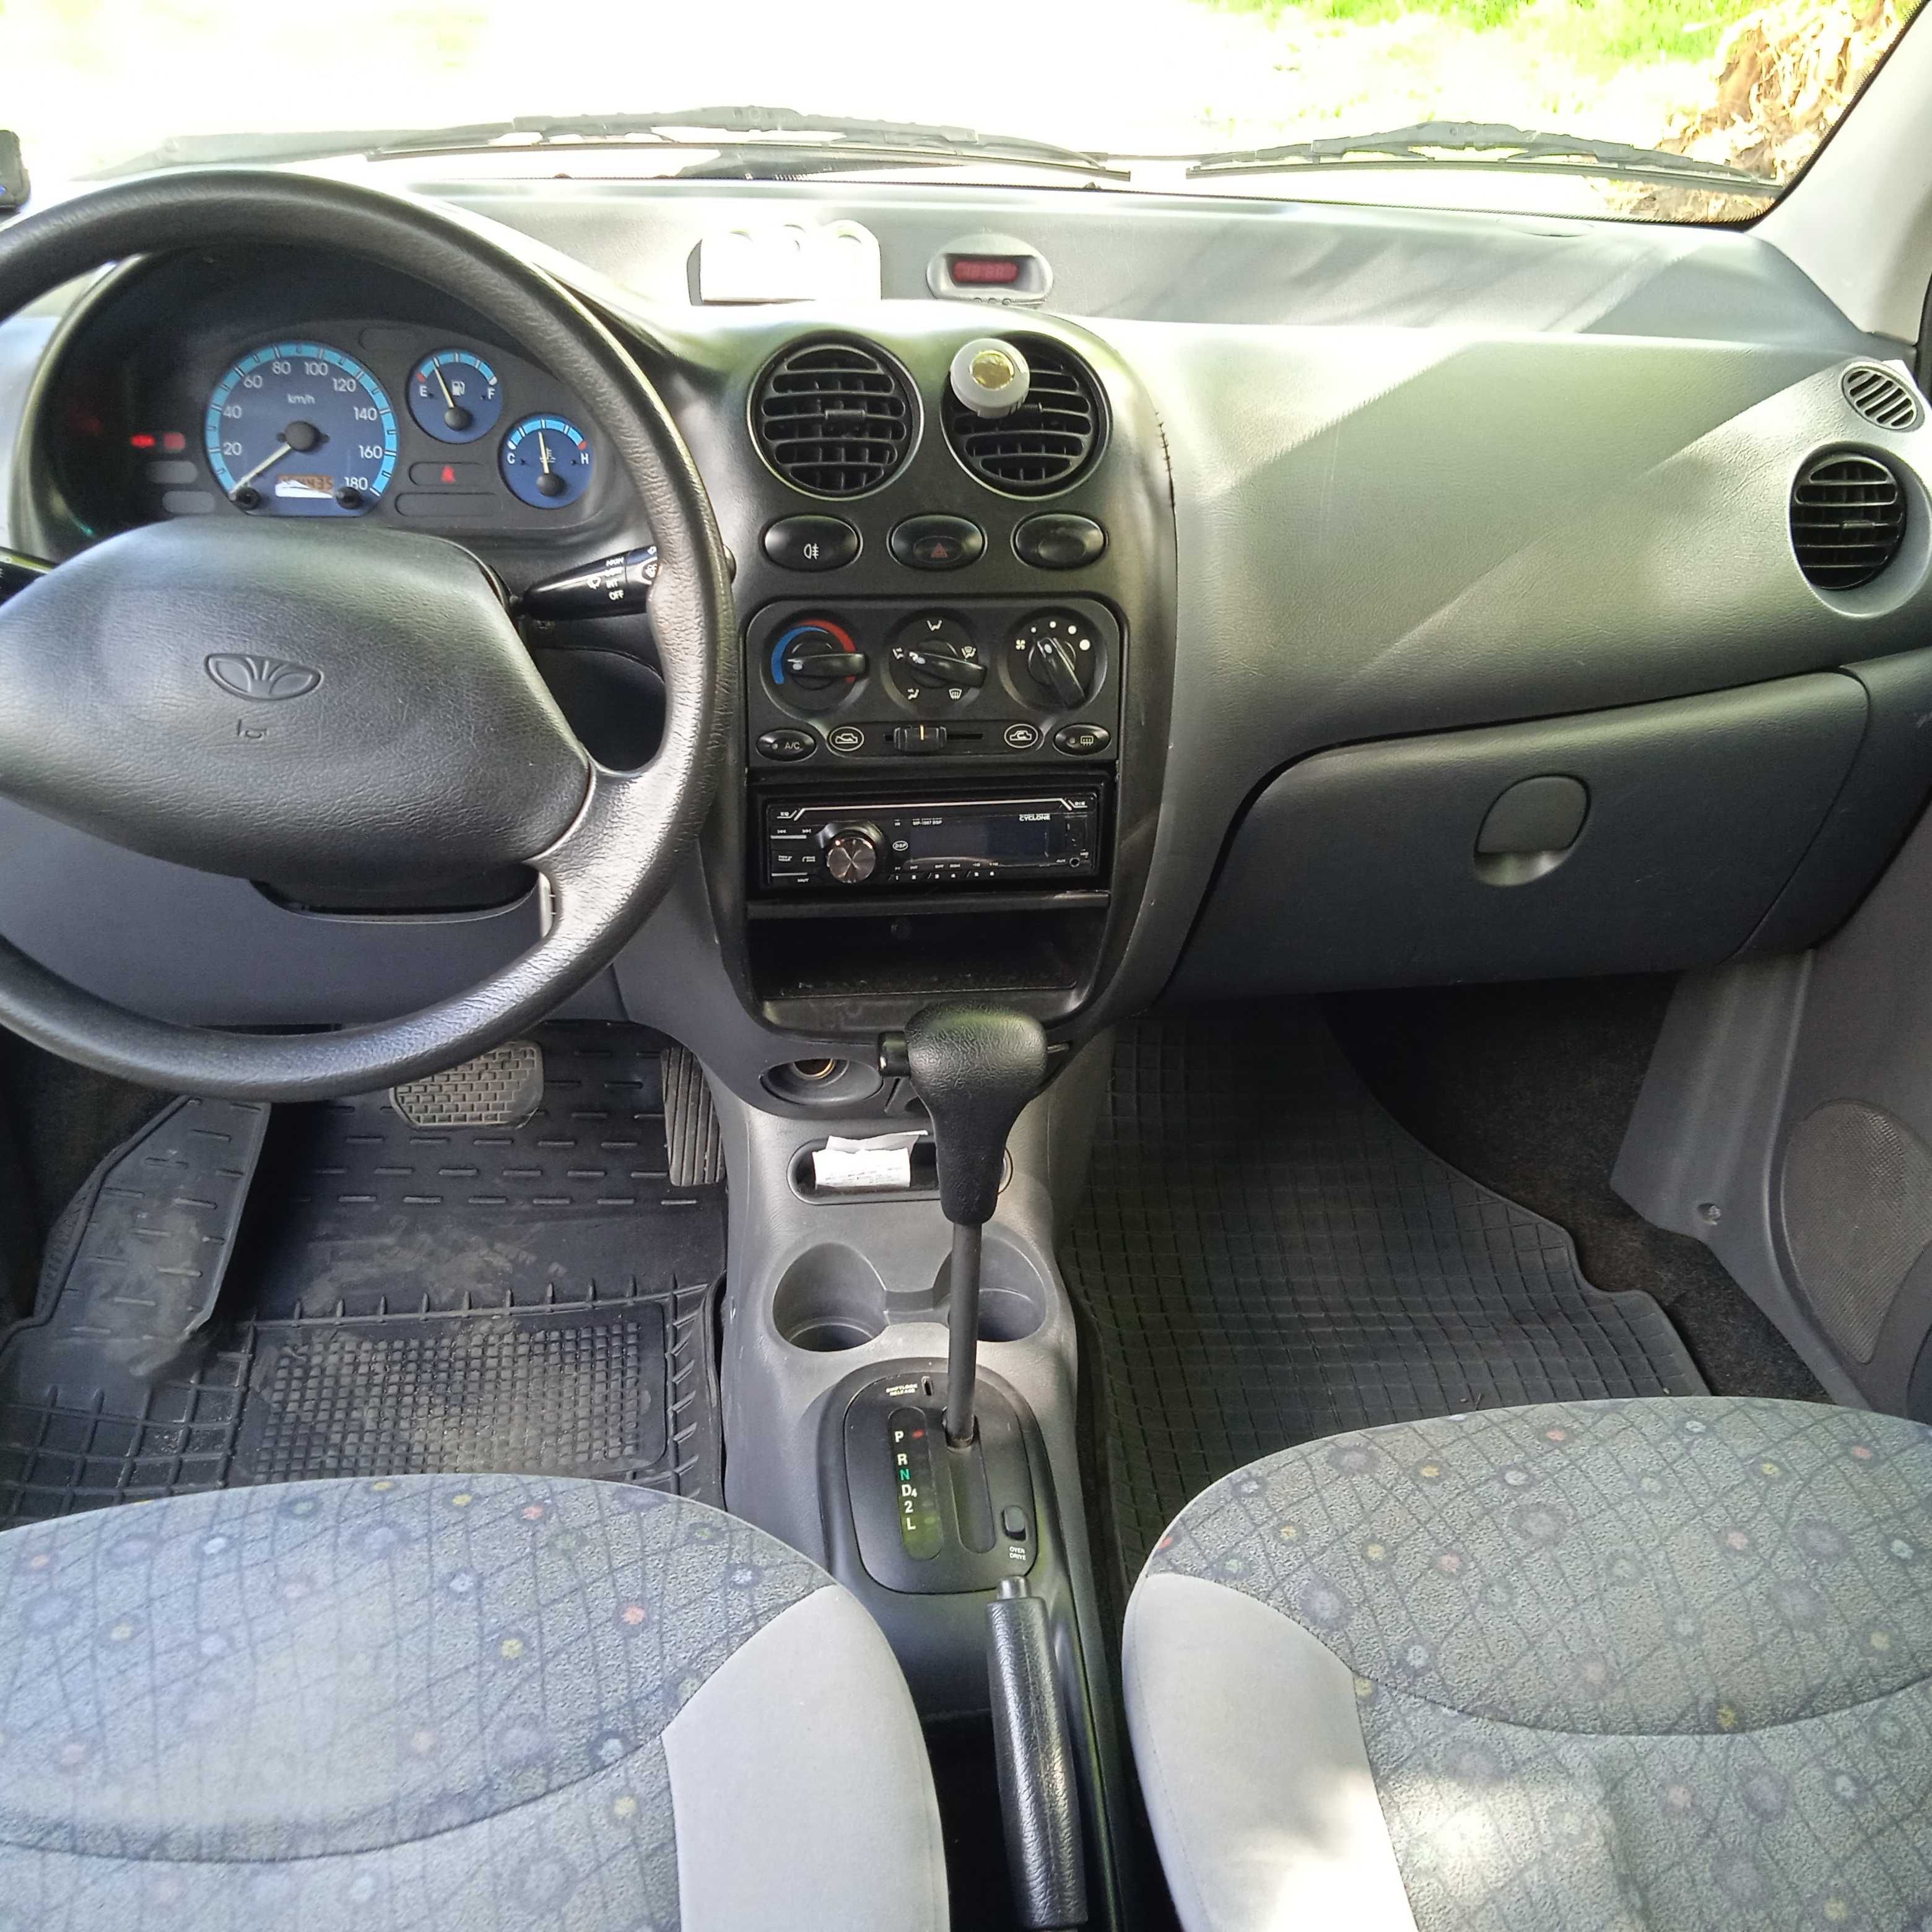 продам Daewoo Matiz на автоматі 2010 р.в.